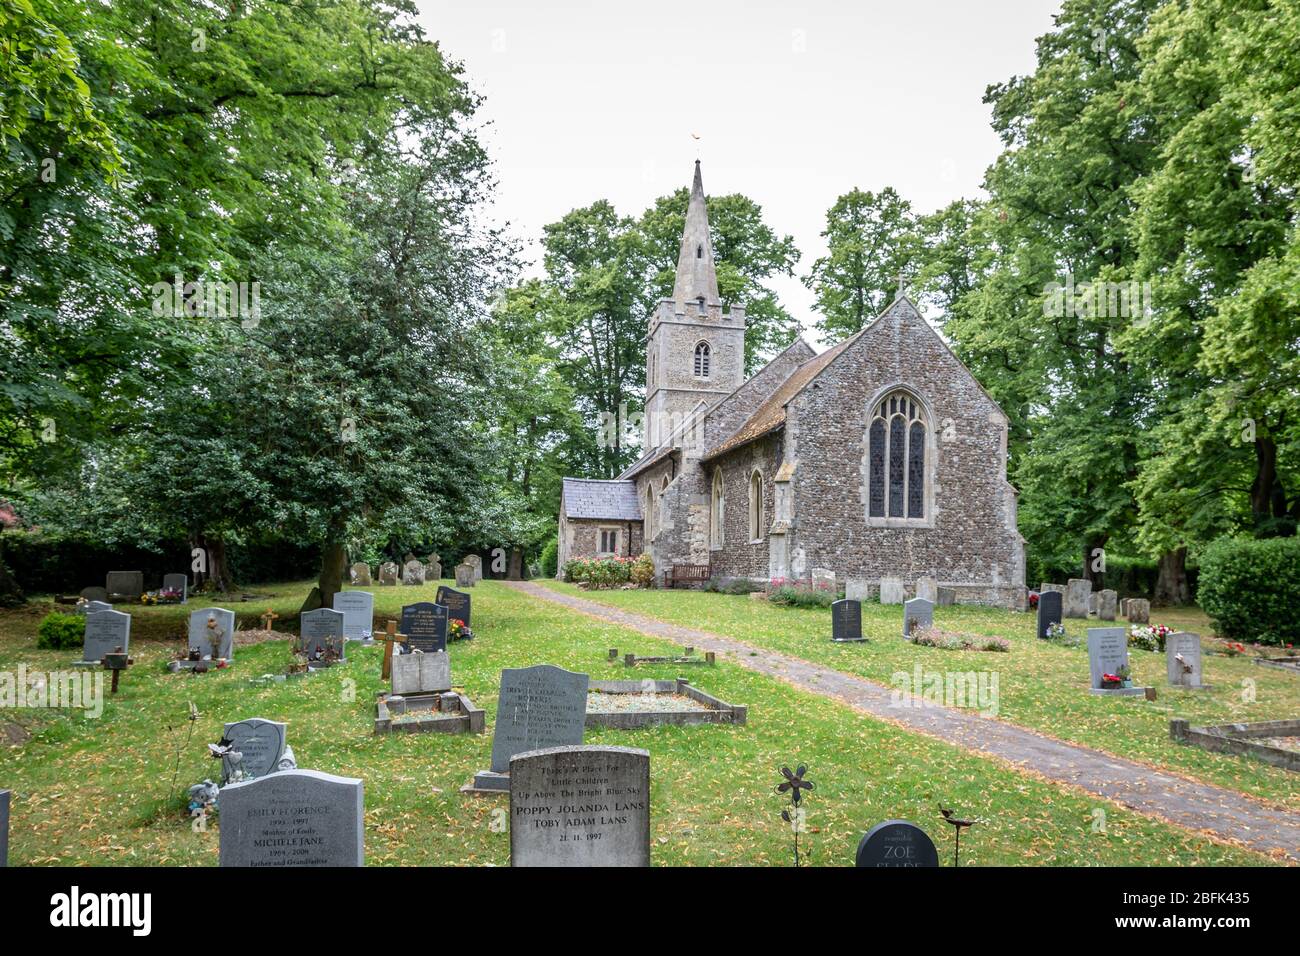 St Marys Church, Hardwick, Cambridgeshire, England, UK Stock Photo